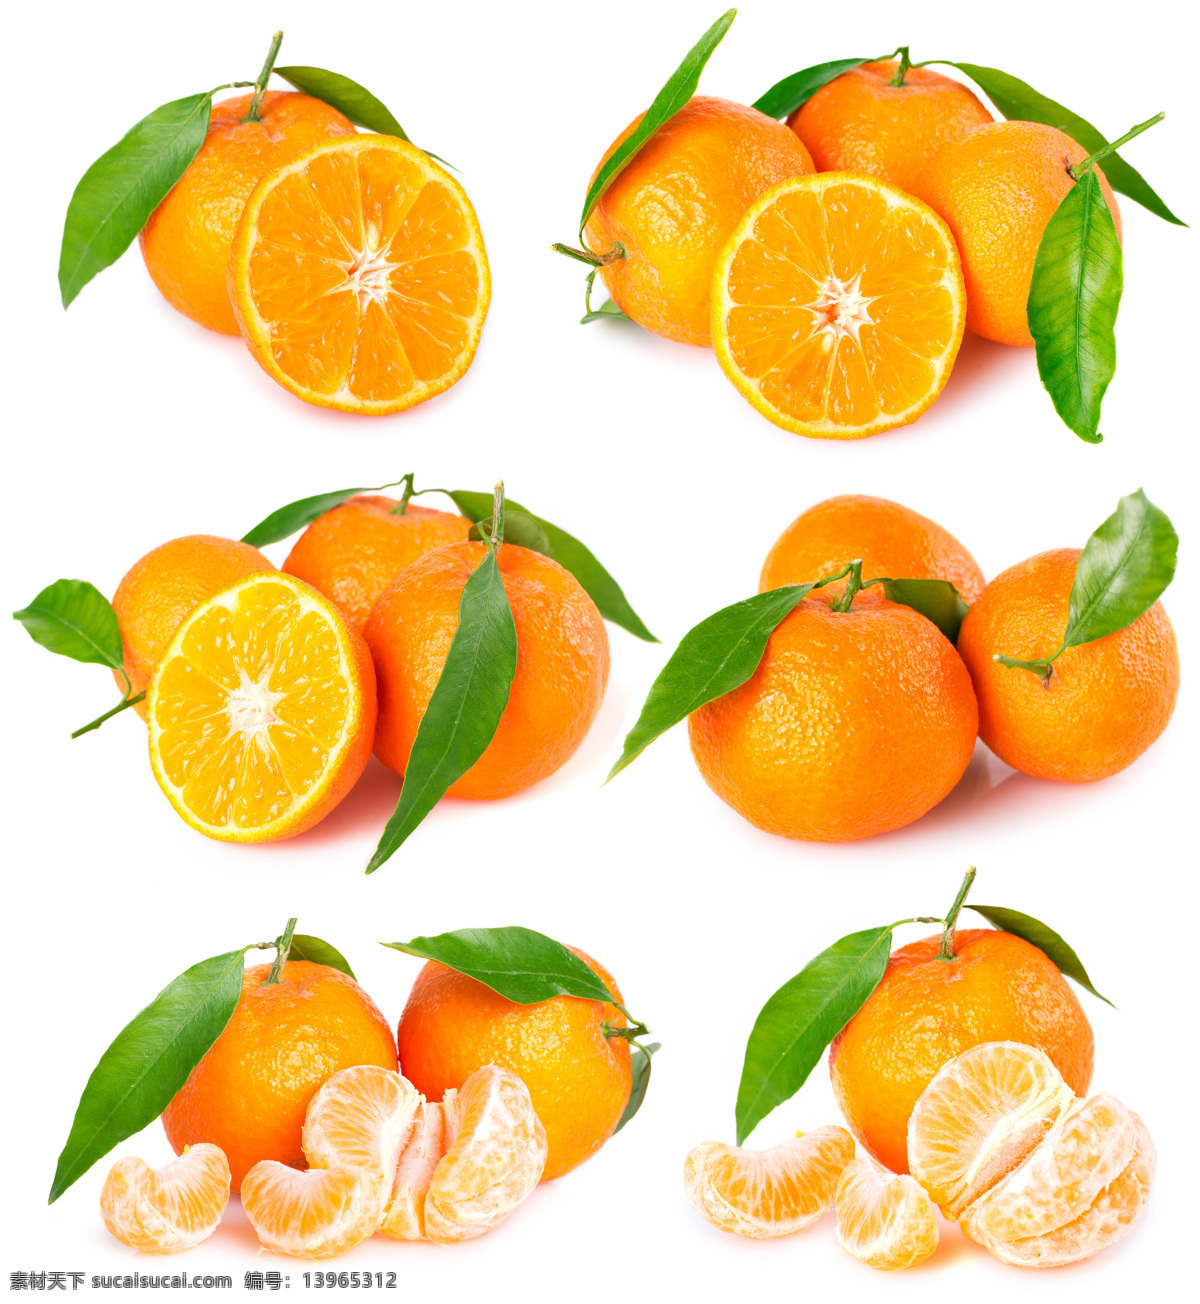 高清 橙子 橙子素材 橙子摄影 橙子图片 叶子 水果 水果素材 水果图片 橘子 摄影图库 蔬菜图片 餐饮美食